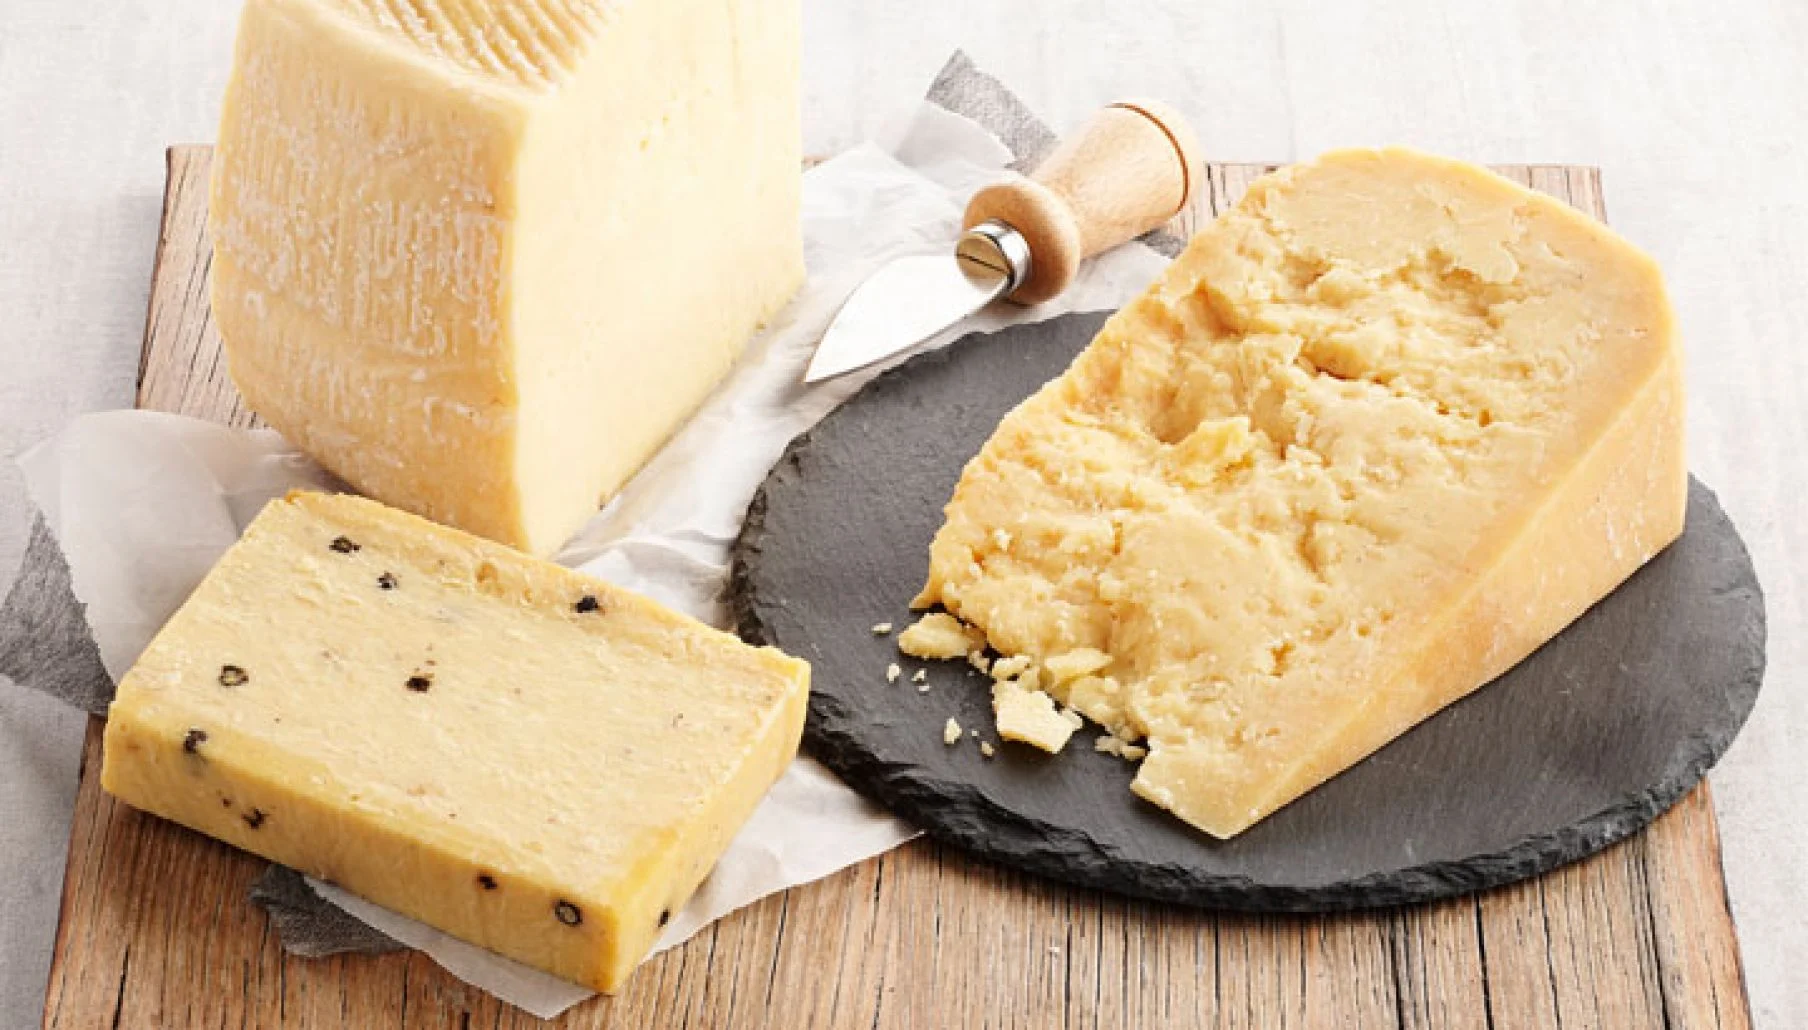 السر الخطير في عمل ألجبنه الرومي زي المحلات بطريقة صحية وبمكونات بسيطة